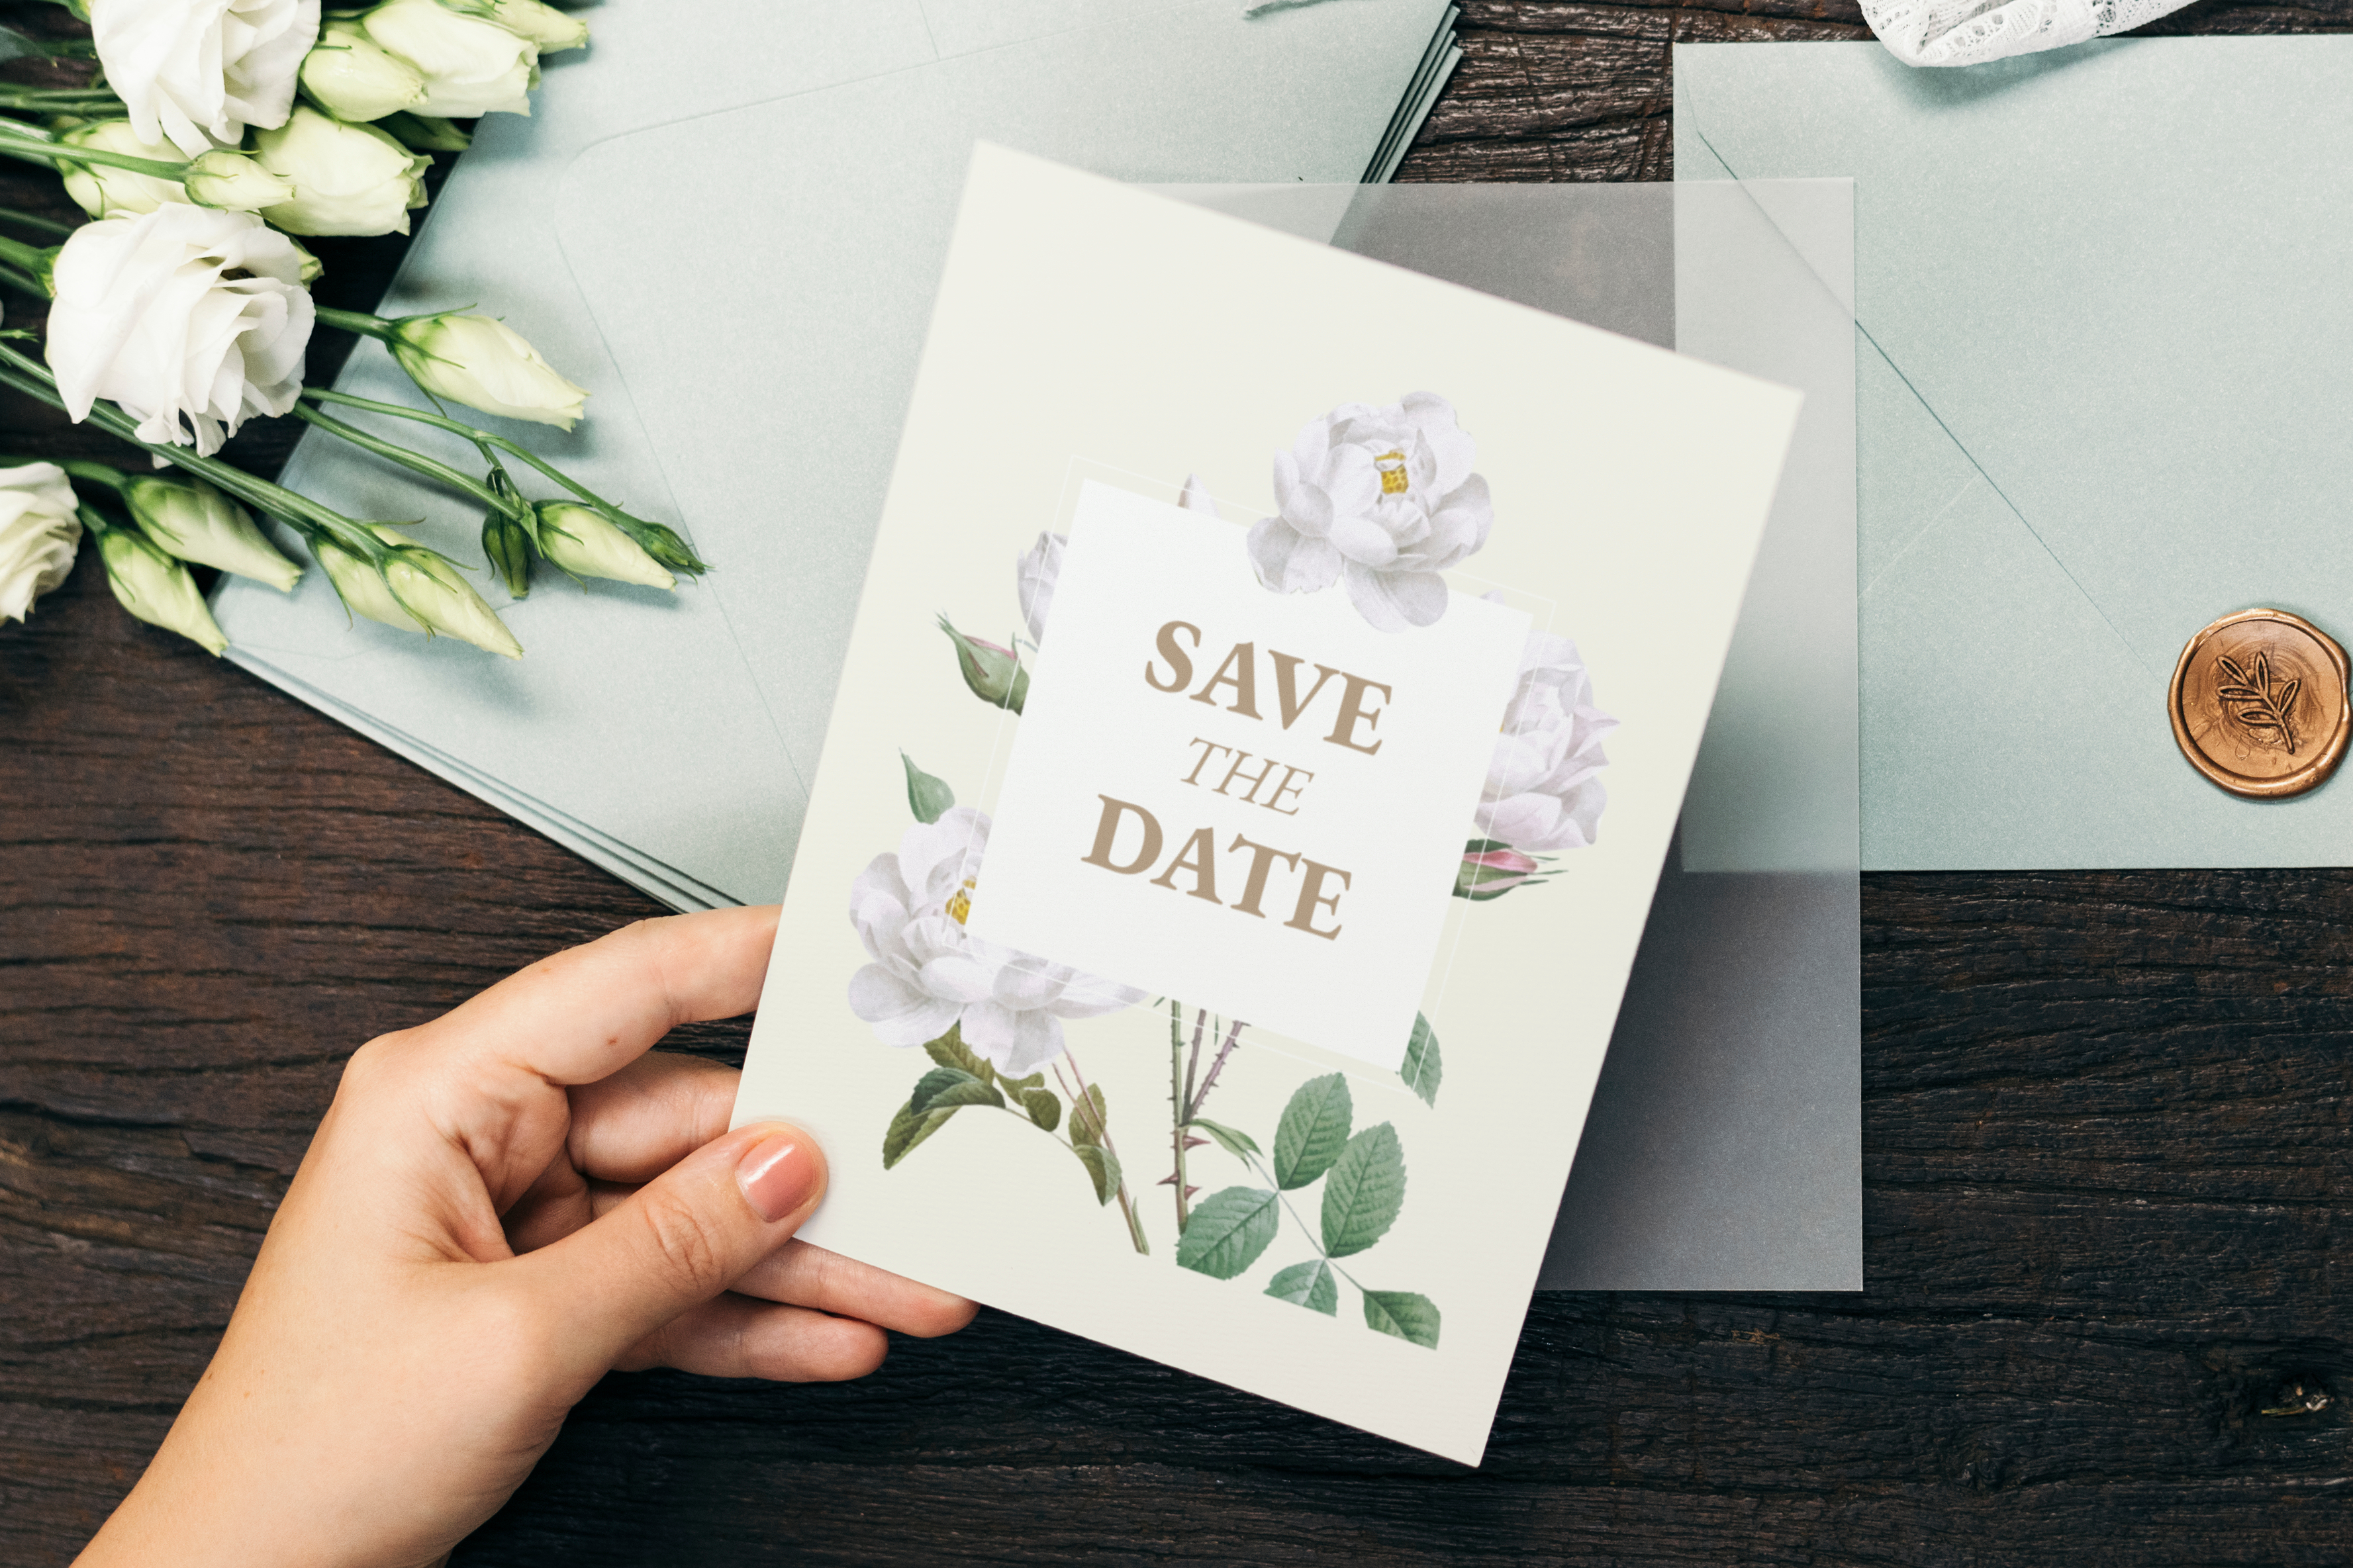 Carte de vœux pour la date du mariage | Source : Shutterstock